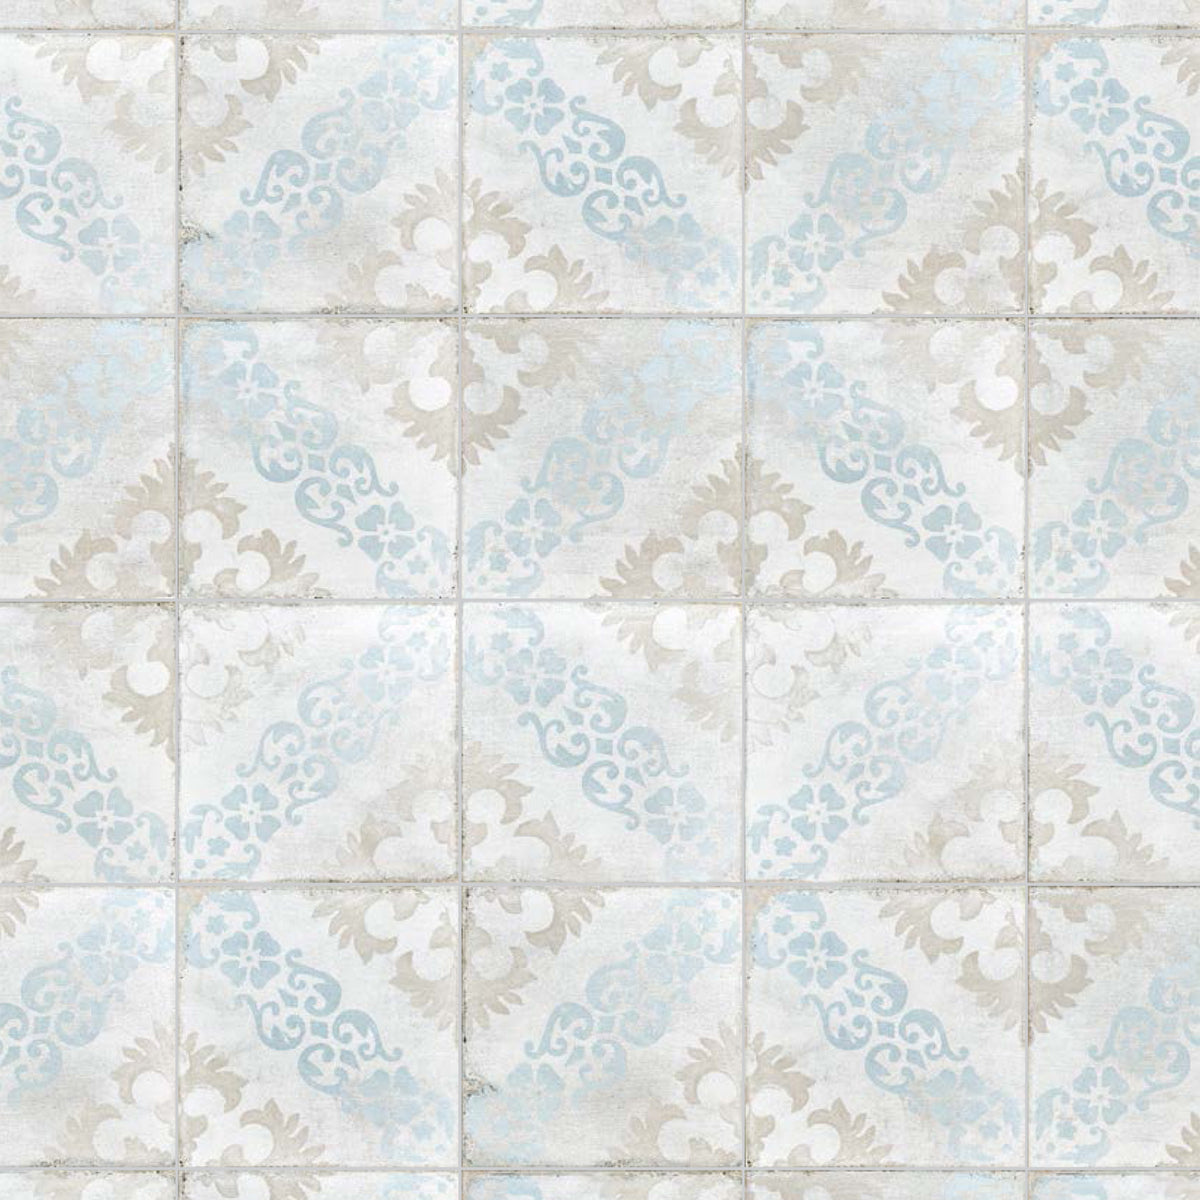 Topcu - Barcelona 6 in. x 6 in. Glazed Porcelain Tile  - Sarria Decor